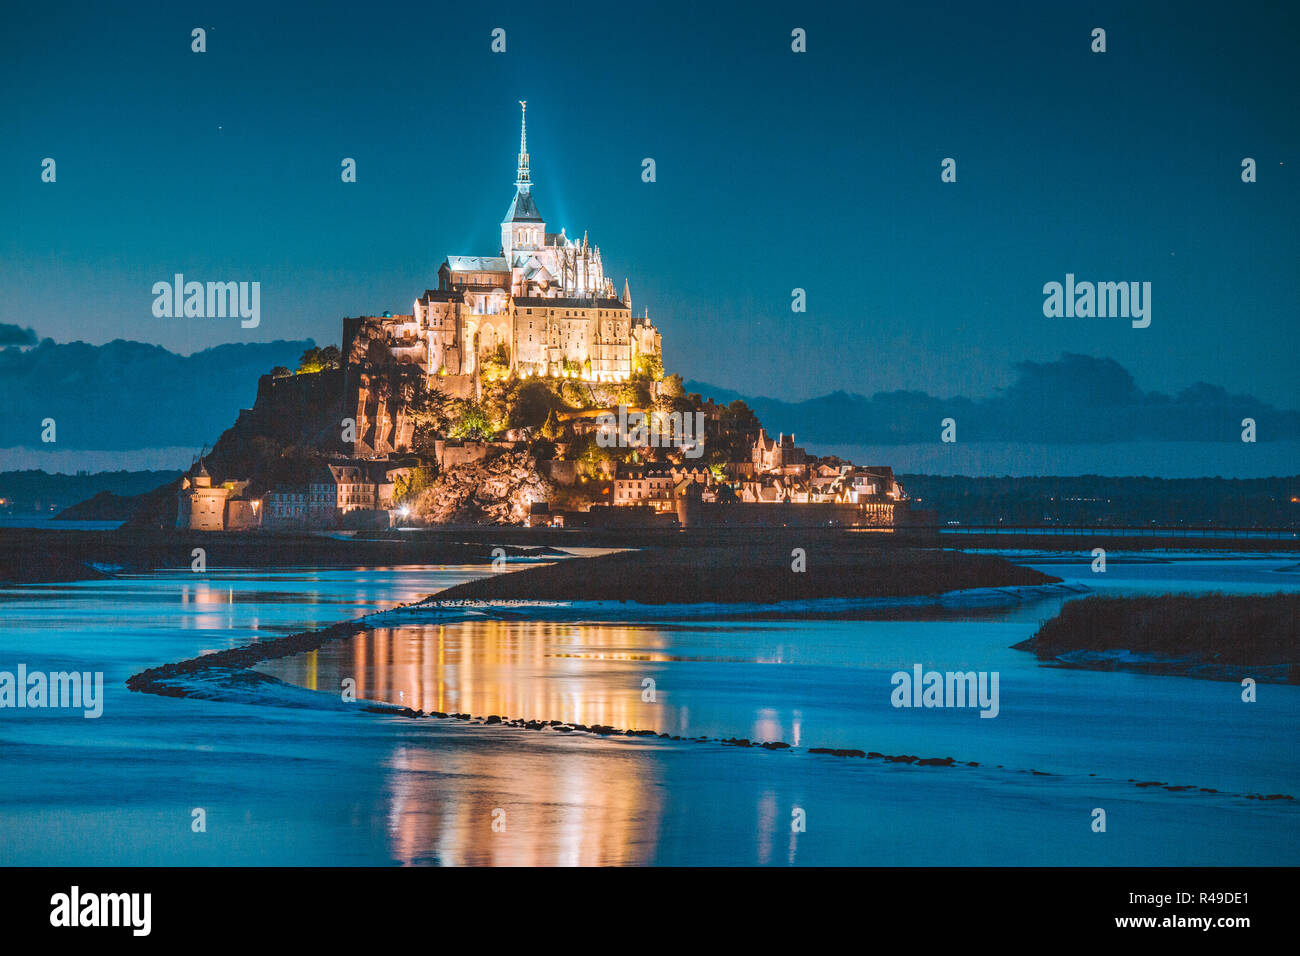 La vue classique du célèbre Le Mont Saint-Michel tidal Island dans le magnifique crépuscule pendant l'heure bleue, au crépuscule, en Normandie, dans le nord de la France Banque D'Images